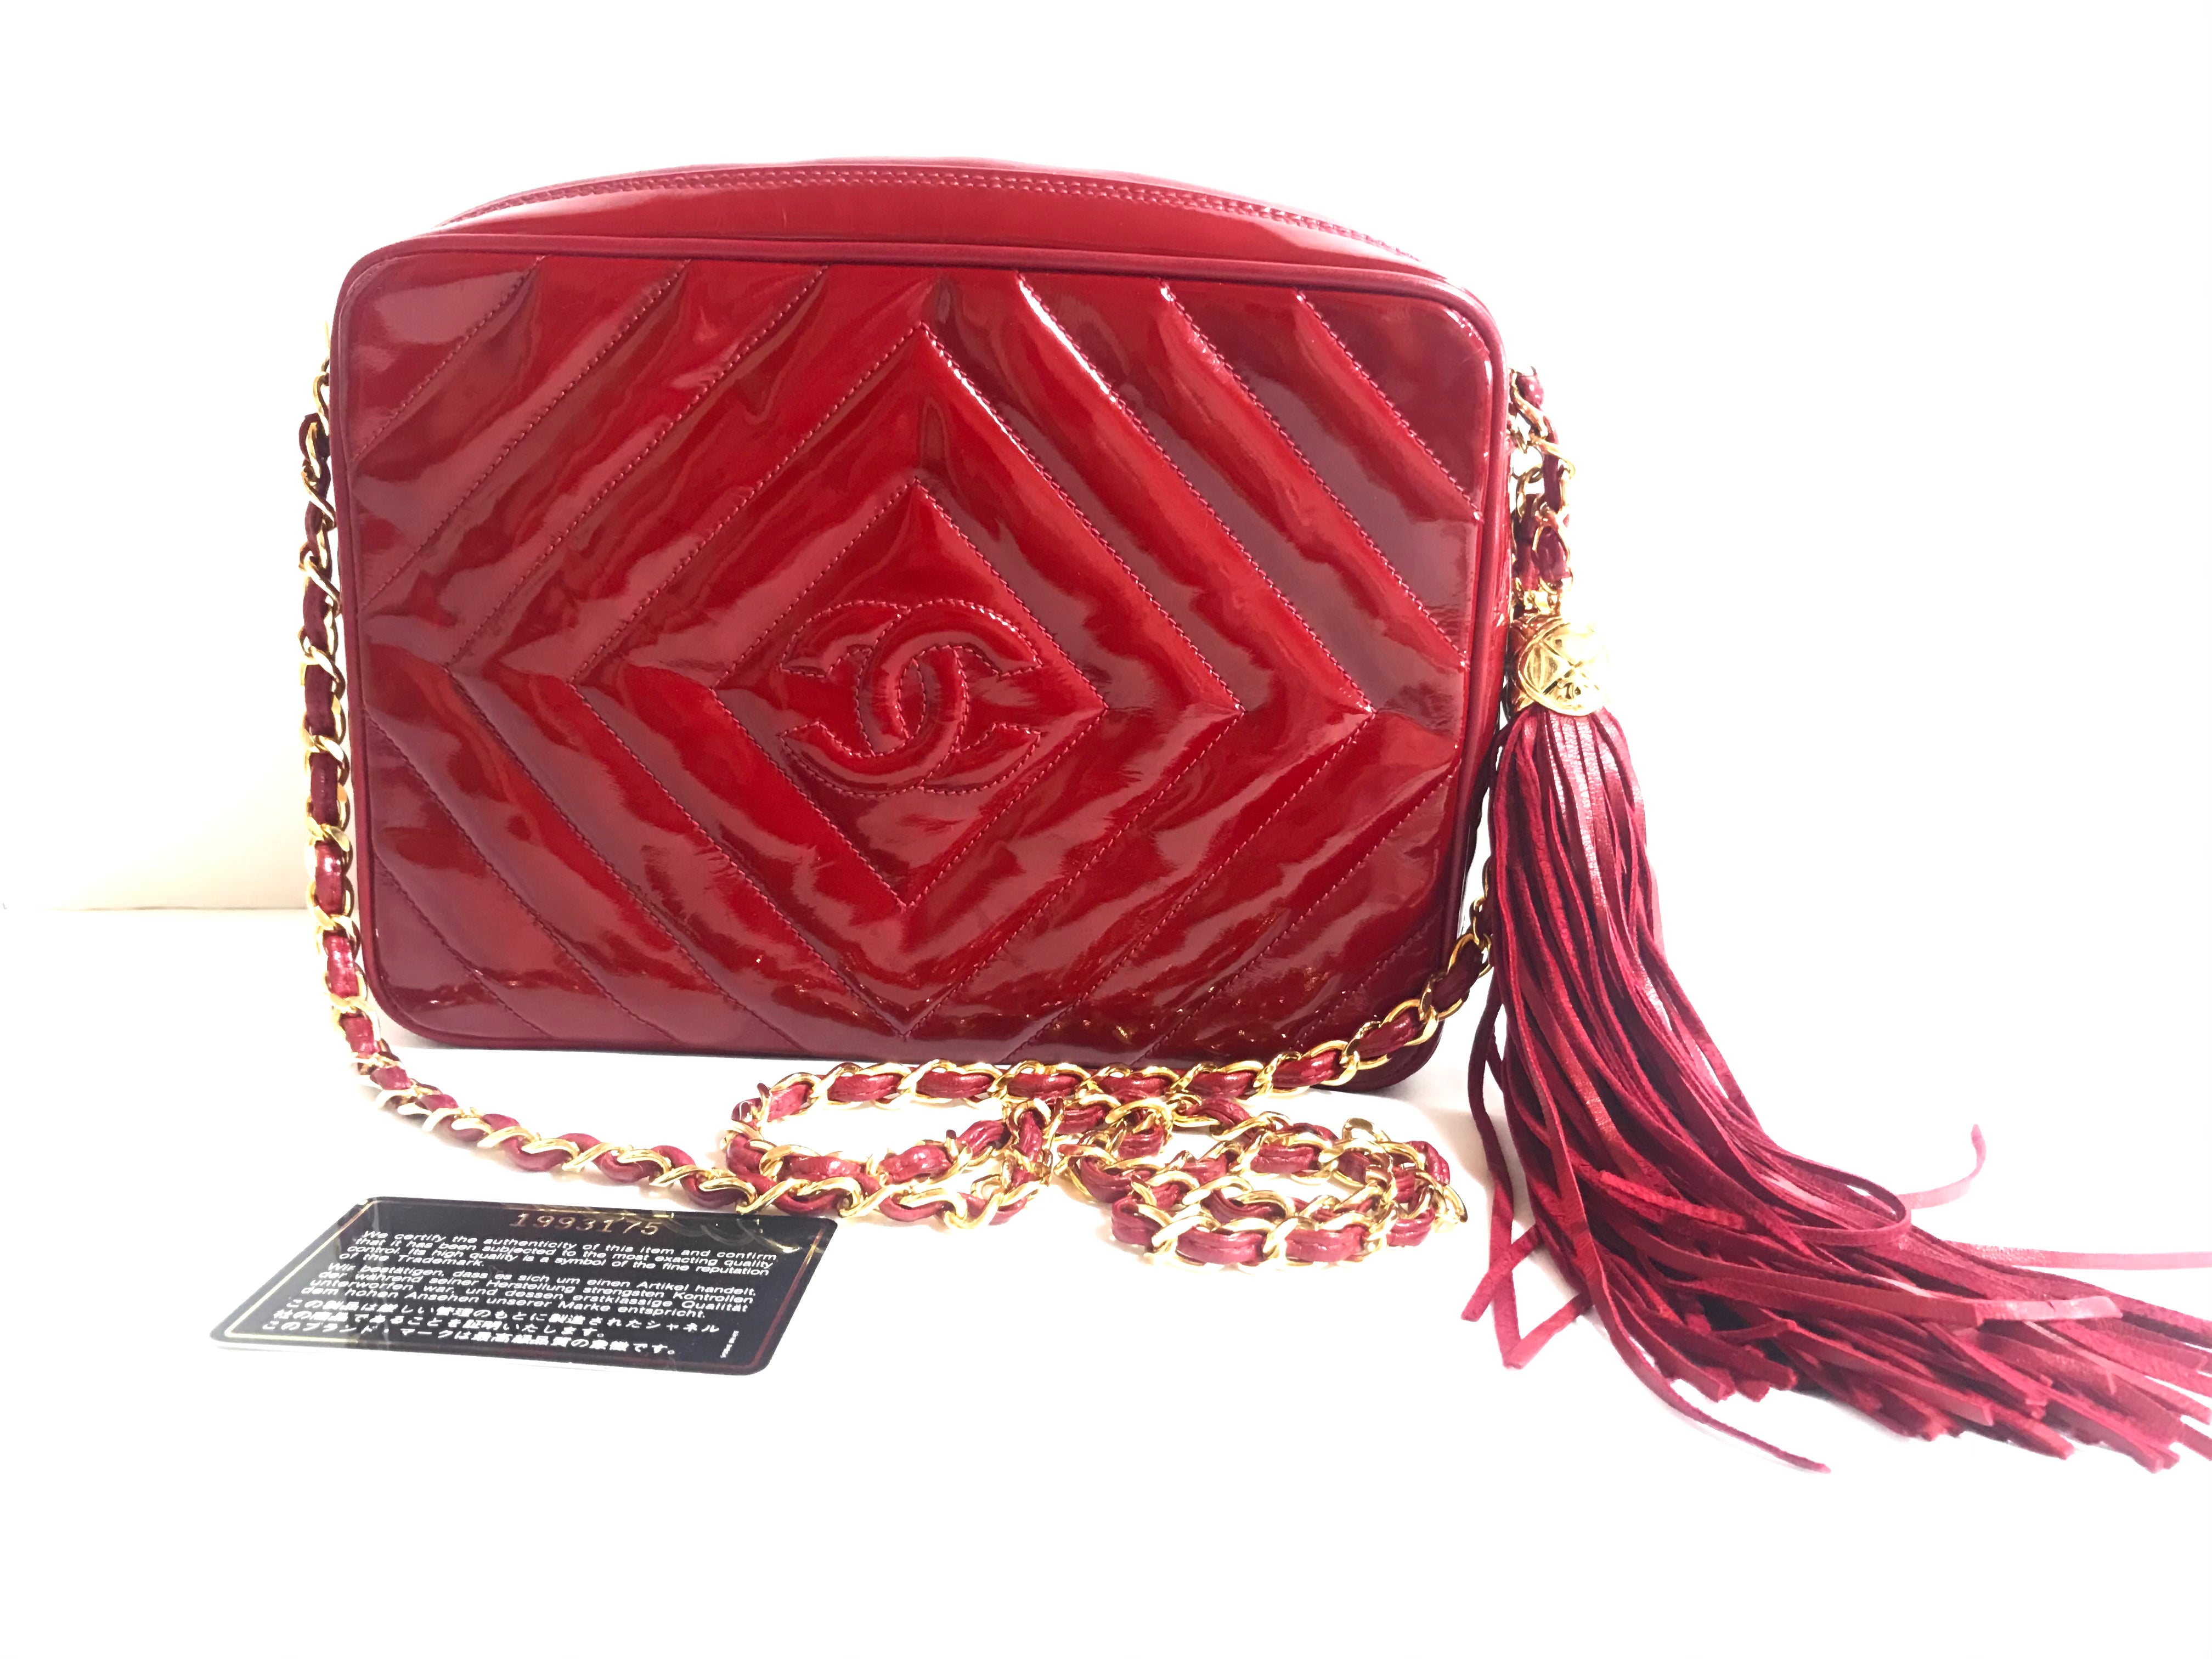 red leather chanel bag vintage